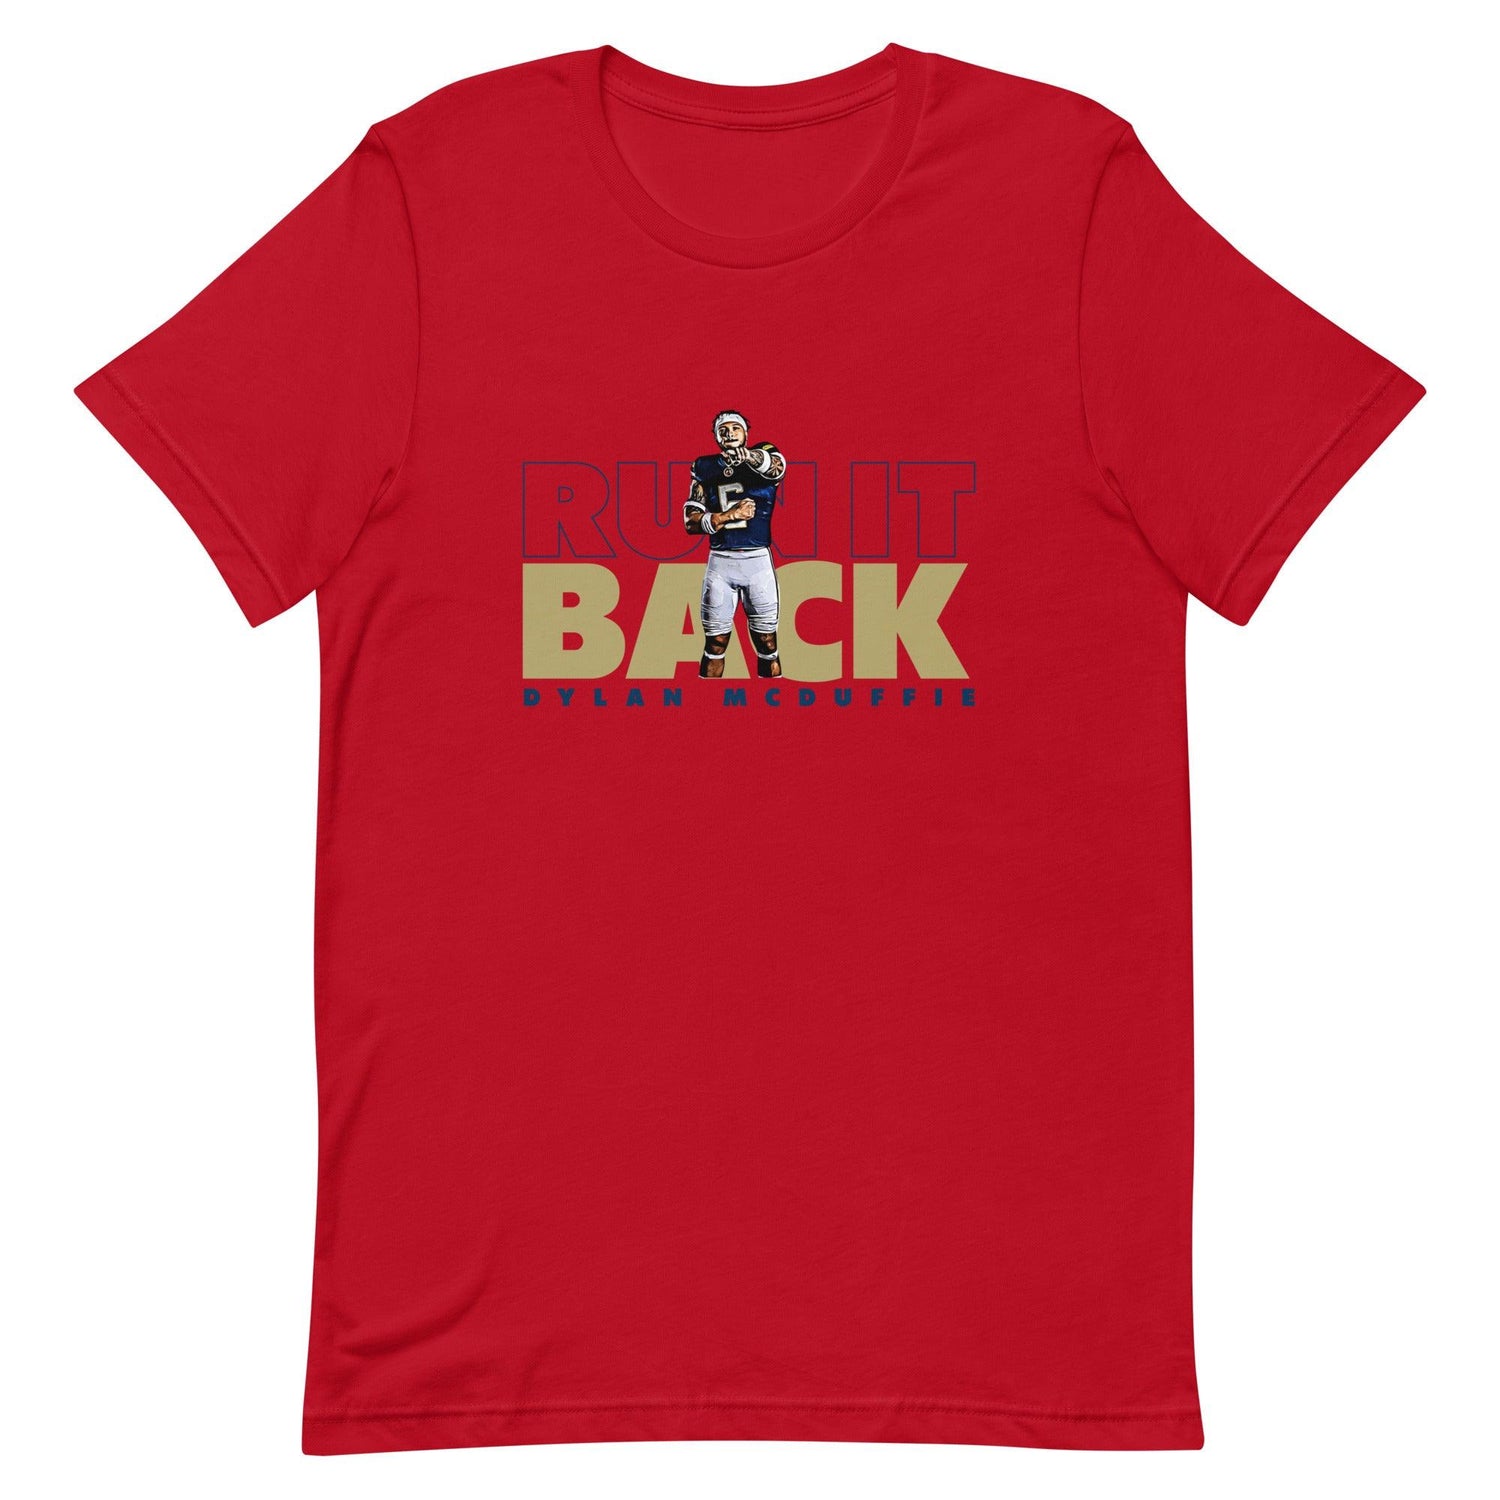 Dylan McDuffie "Run It Back" t-shirt - Fan Arch